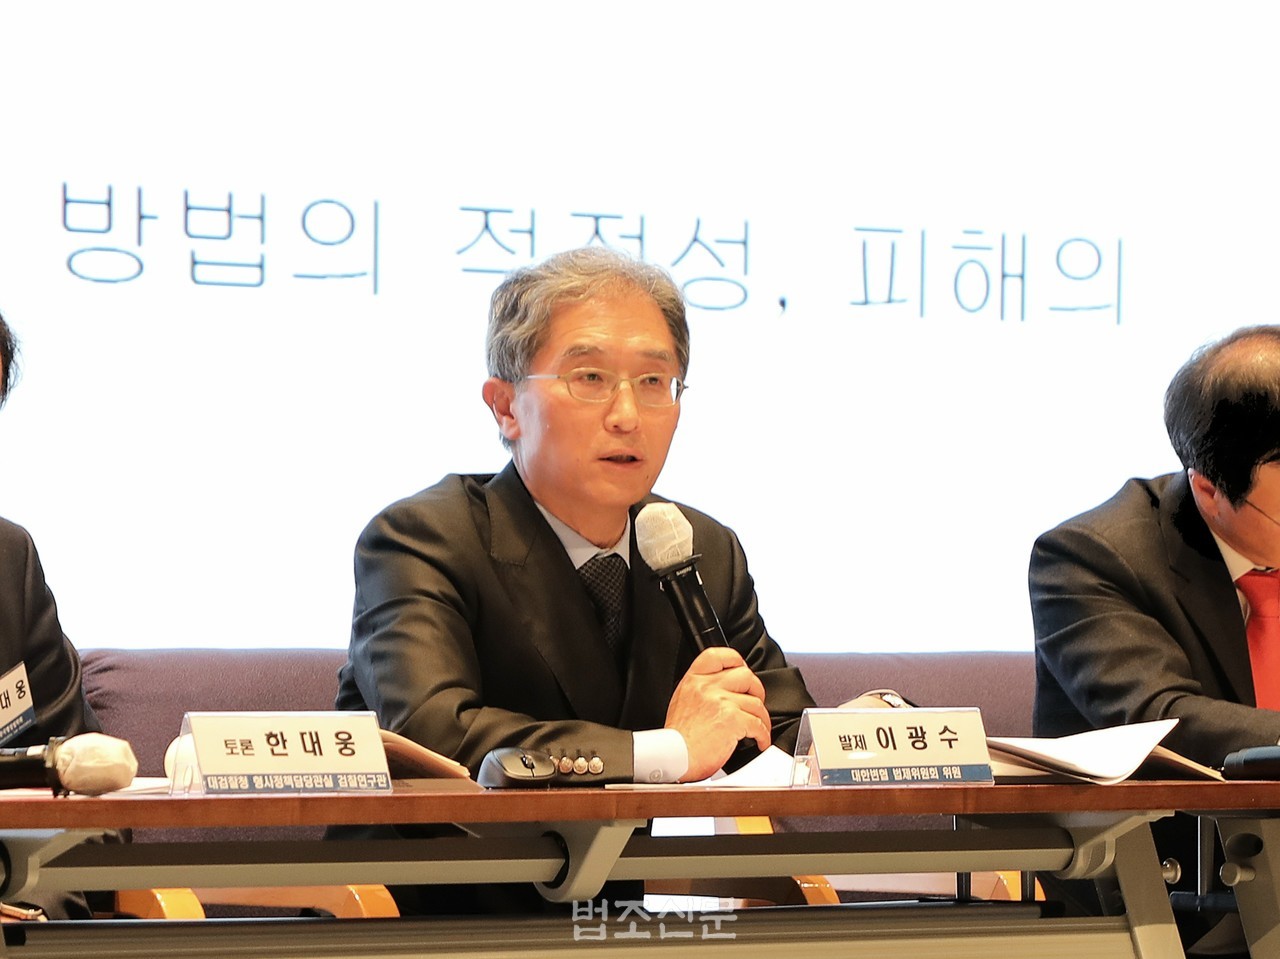 이광수 변호사가 12일 서울 강남구 포스코센터 아트홀에서 열린 '행정조사에 대한 사법적 통제' 학술대회에서 주제발표를 하고 있다